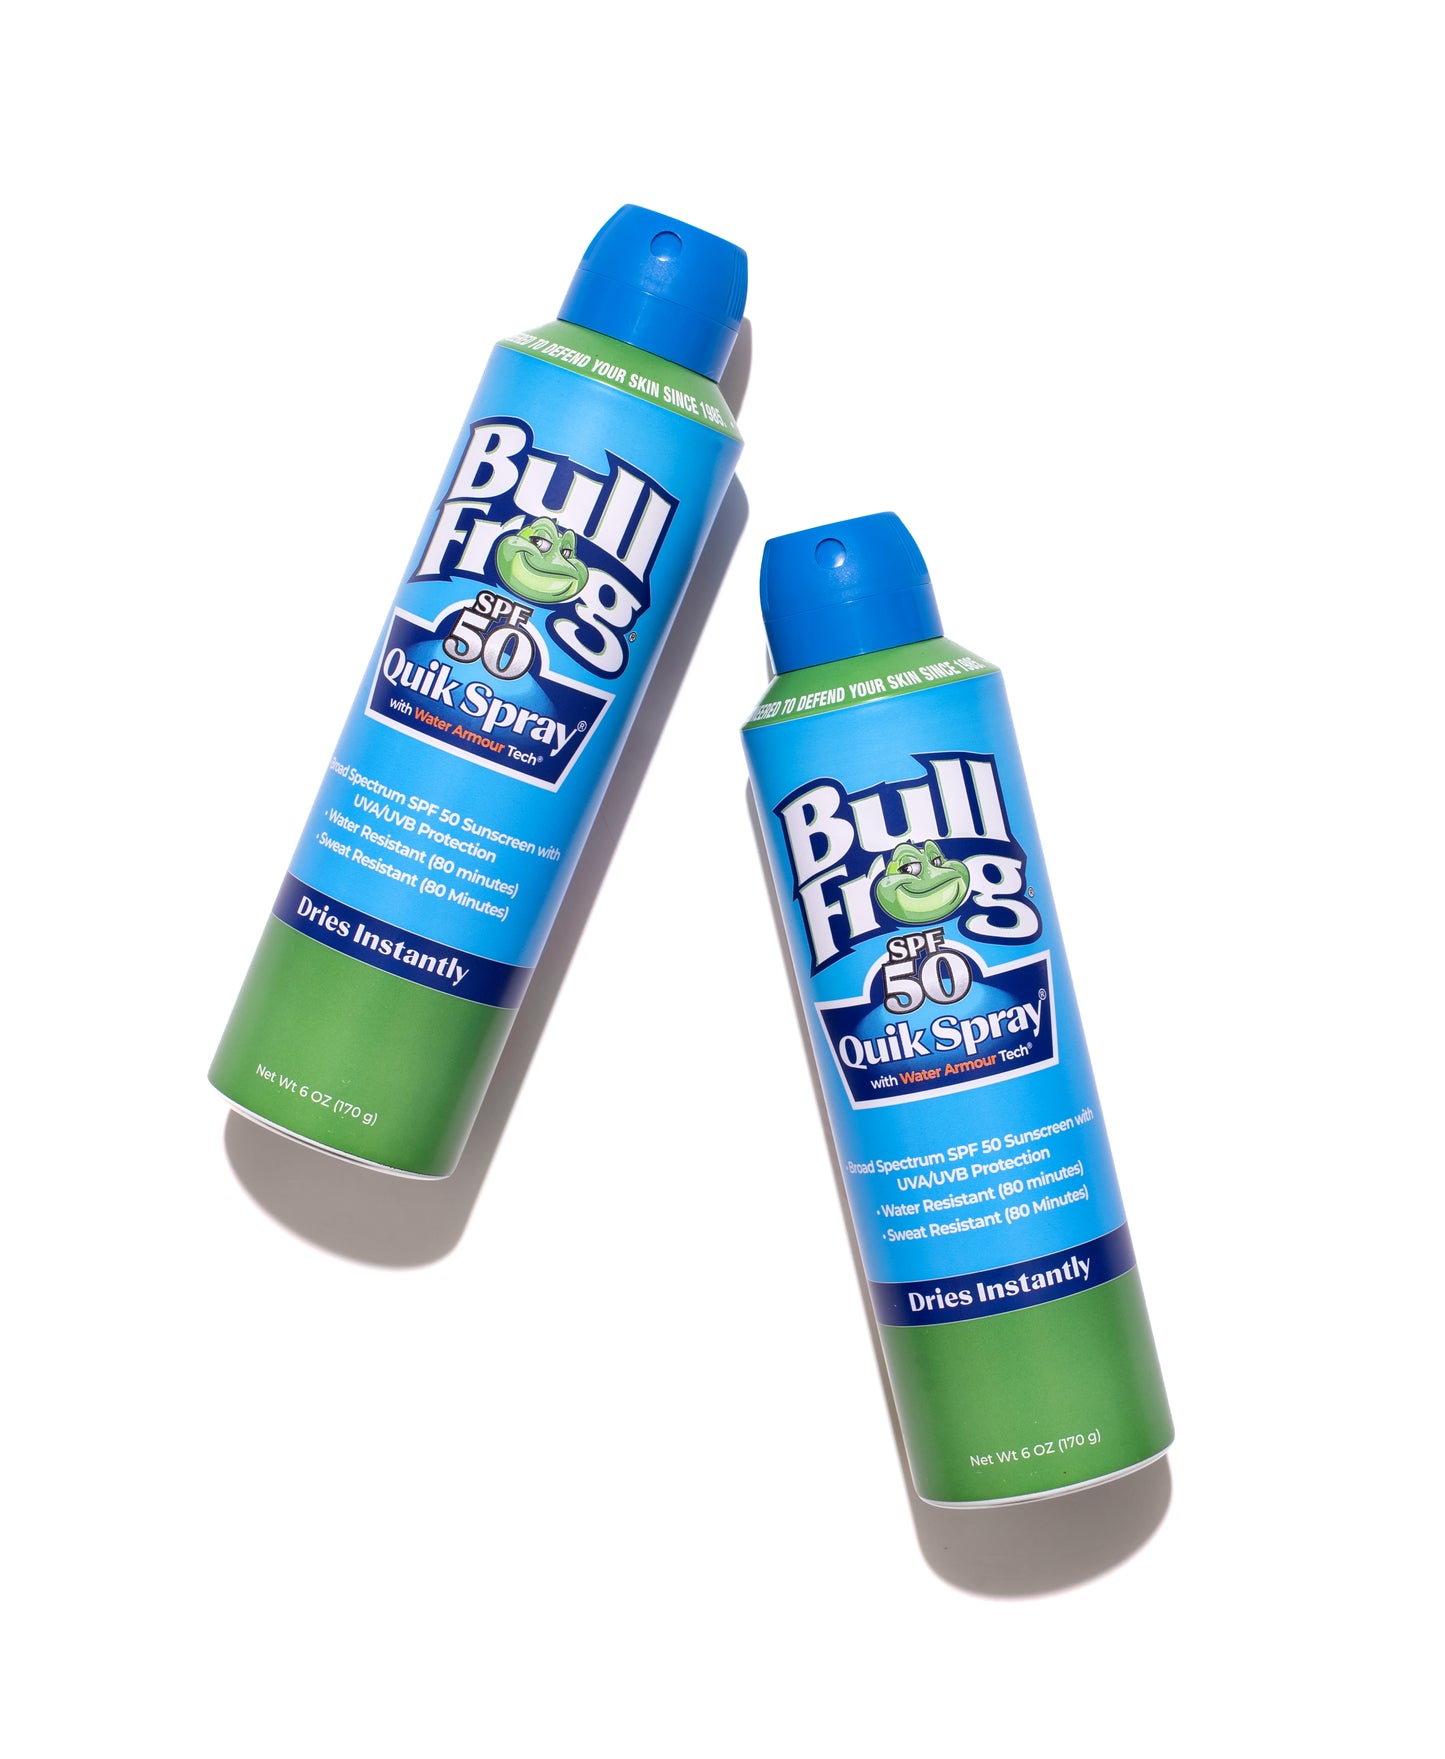 
                  
                    Bullfrog Quik Spray Sunscreen SPF 50 | Broad Spectrum UVA/UVB | 2 pack
                  
                